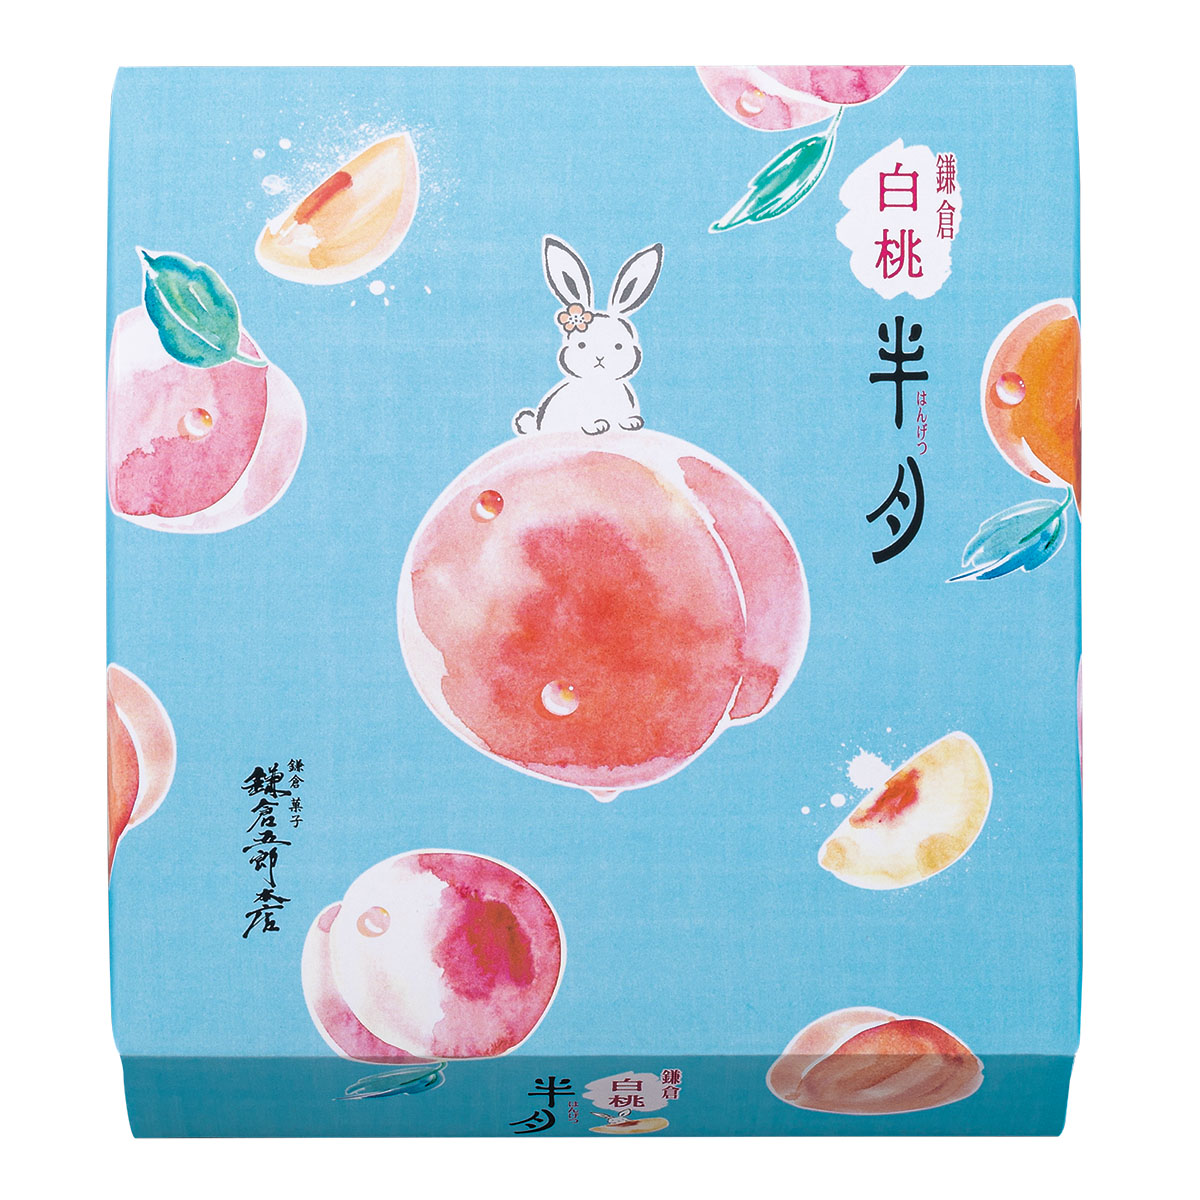 【鎌倉五郎】キュン！と甘酸っぱく爽やかな『白桃半月』登場。みずみずしくジューシーな白桃の味わいのサブ画像3